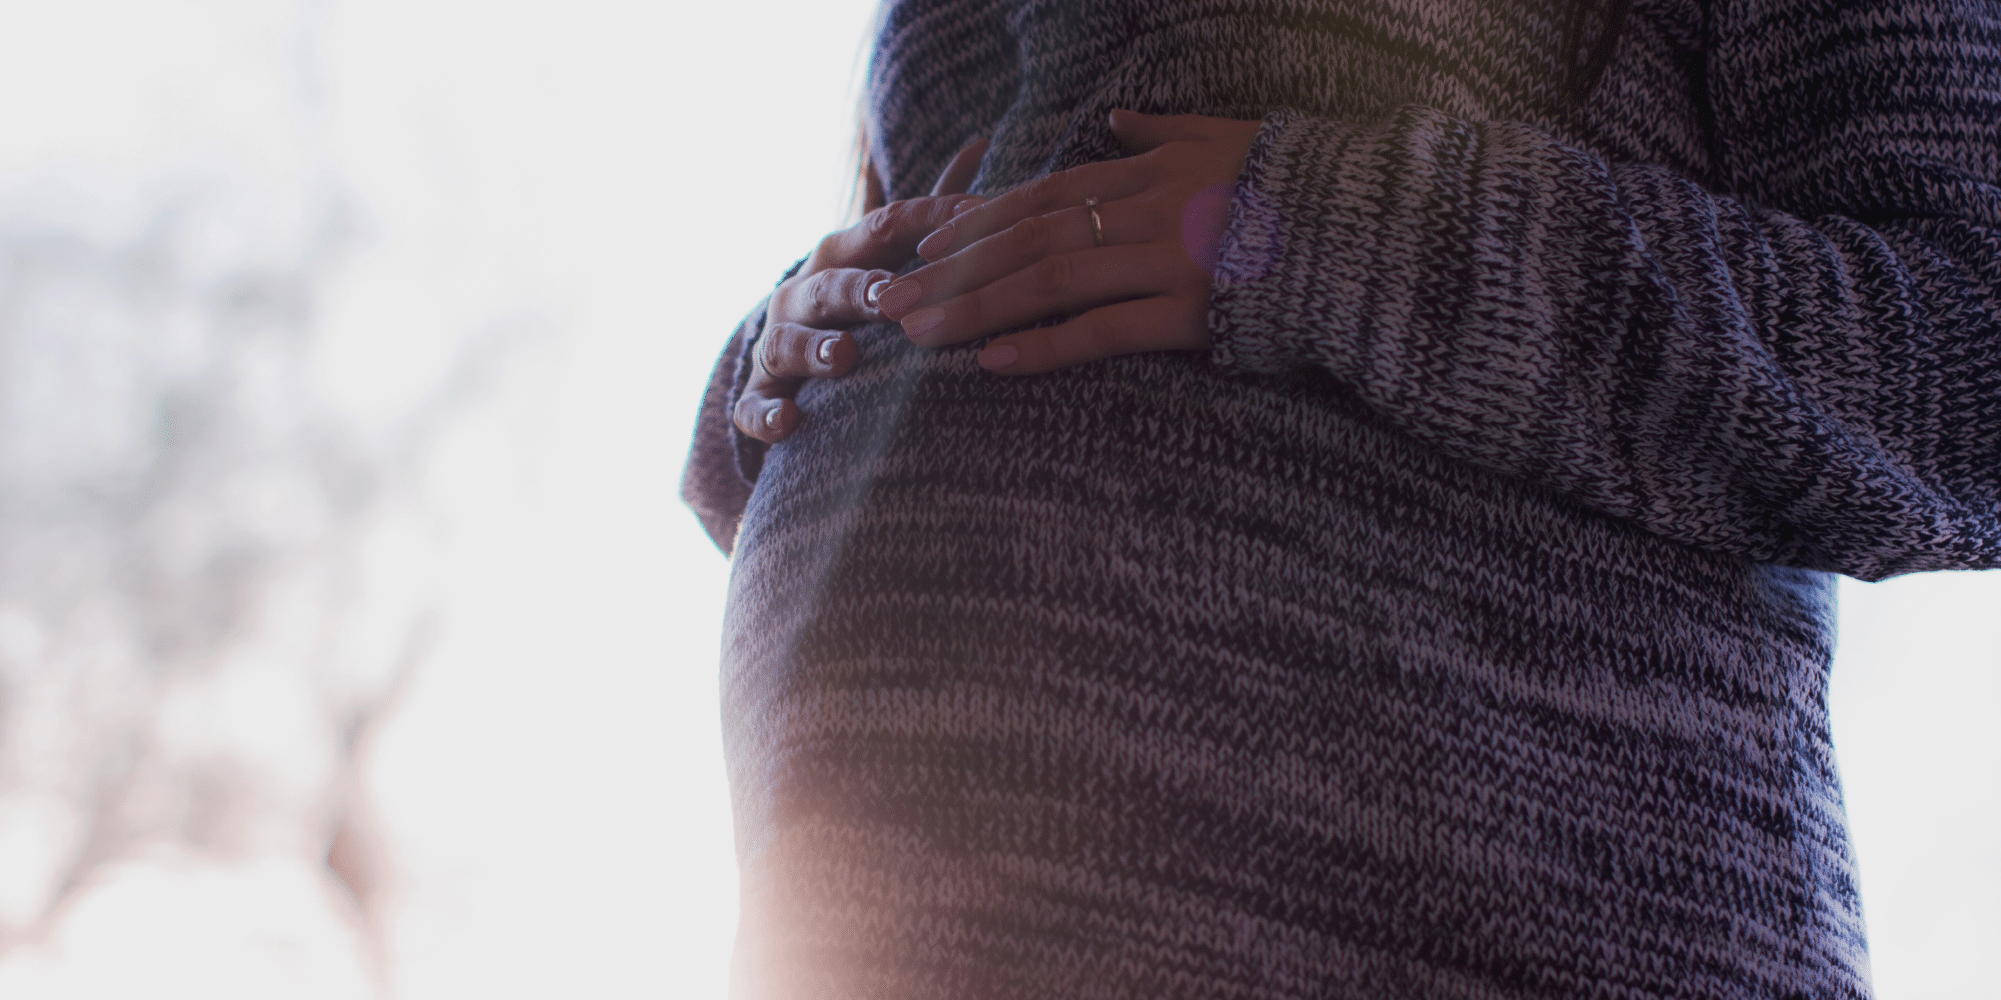 Assessoria Informa: Alterações no Exame de Sexagem Fetal